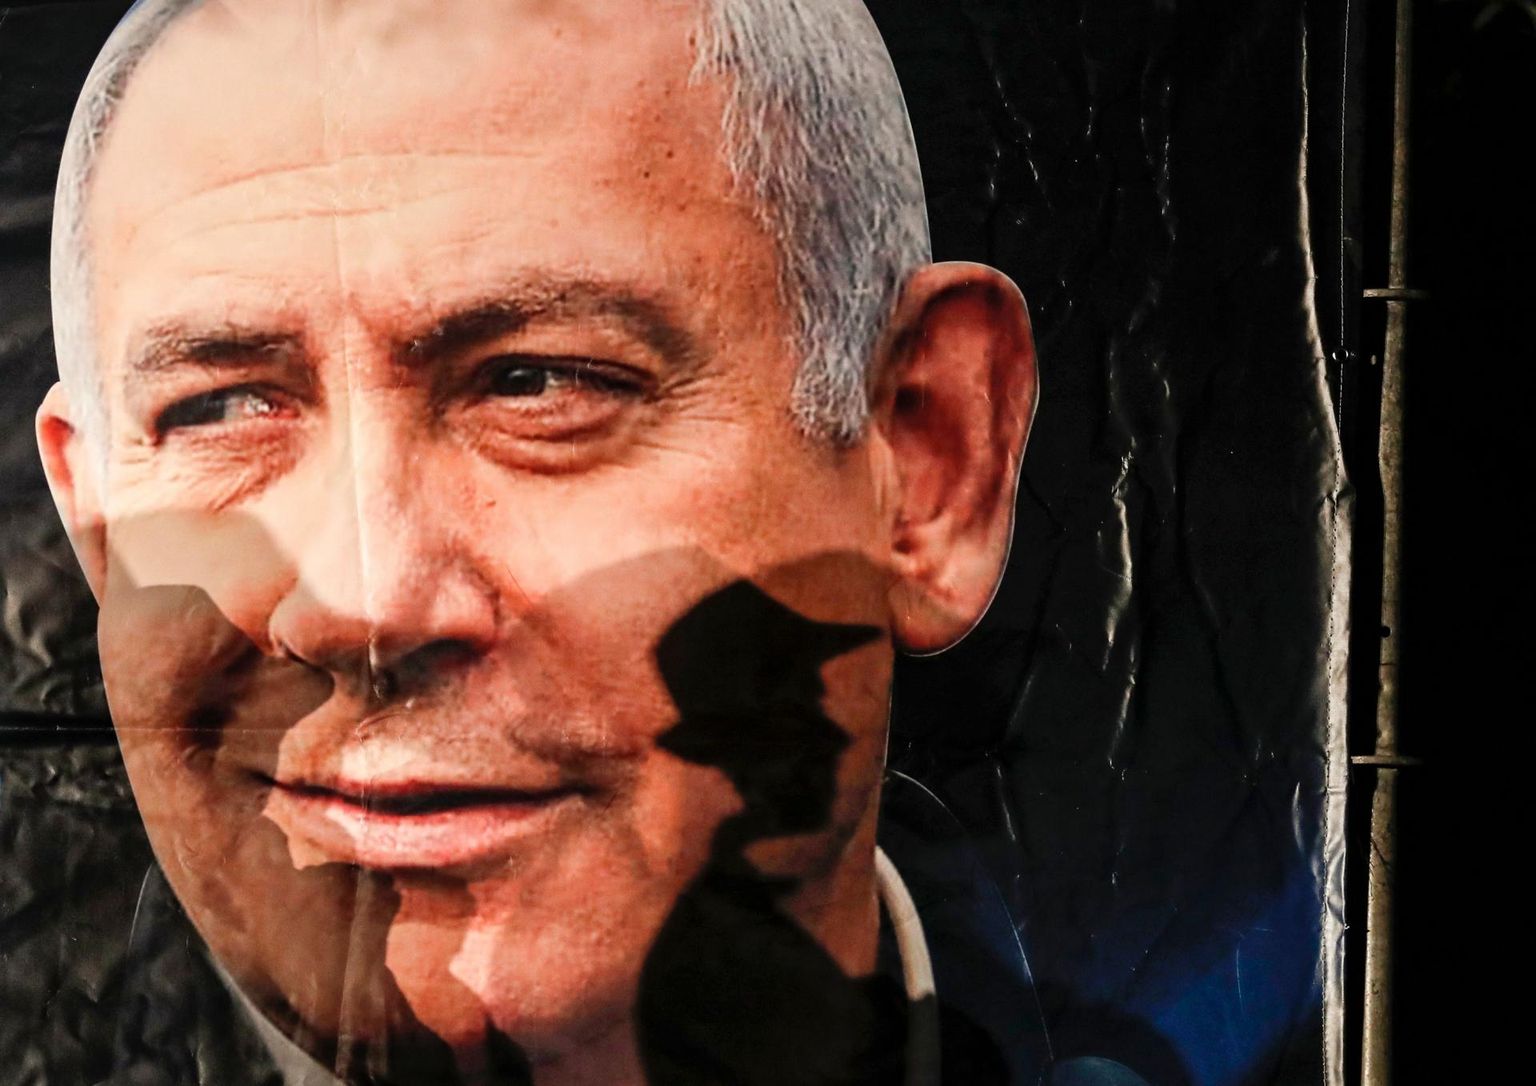 Alates 2009. aastast pole peaminister Benjamin Netanyahu positsioon olnud nii ebakindel, kuid siiski domineerib ta kogu poliitilisel mänguplatsil. 